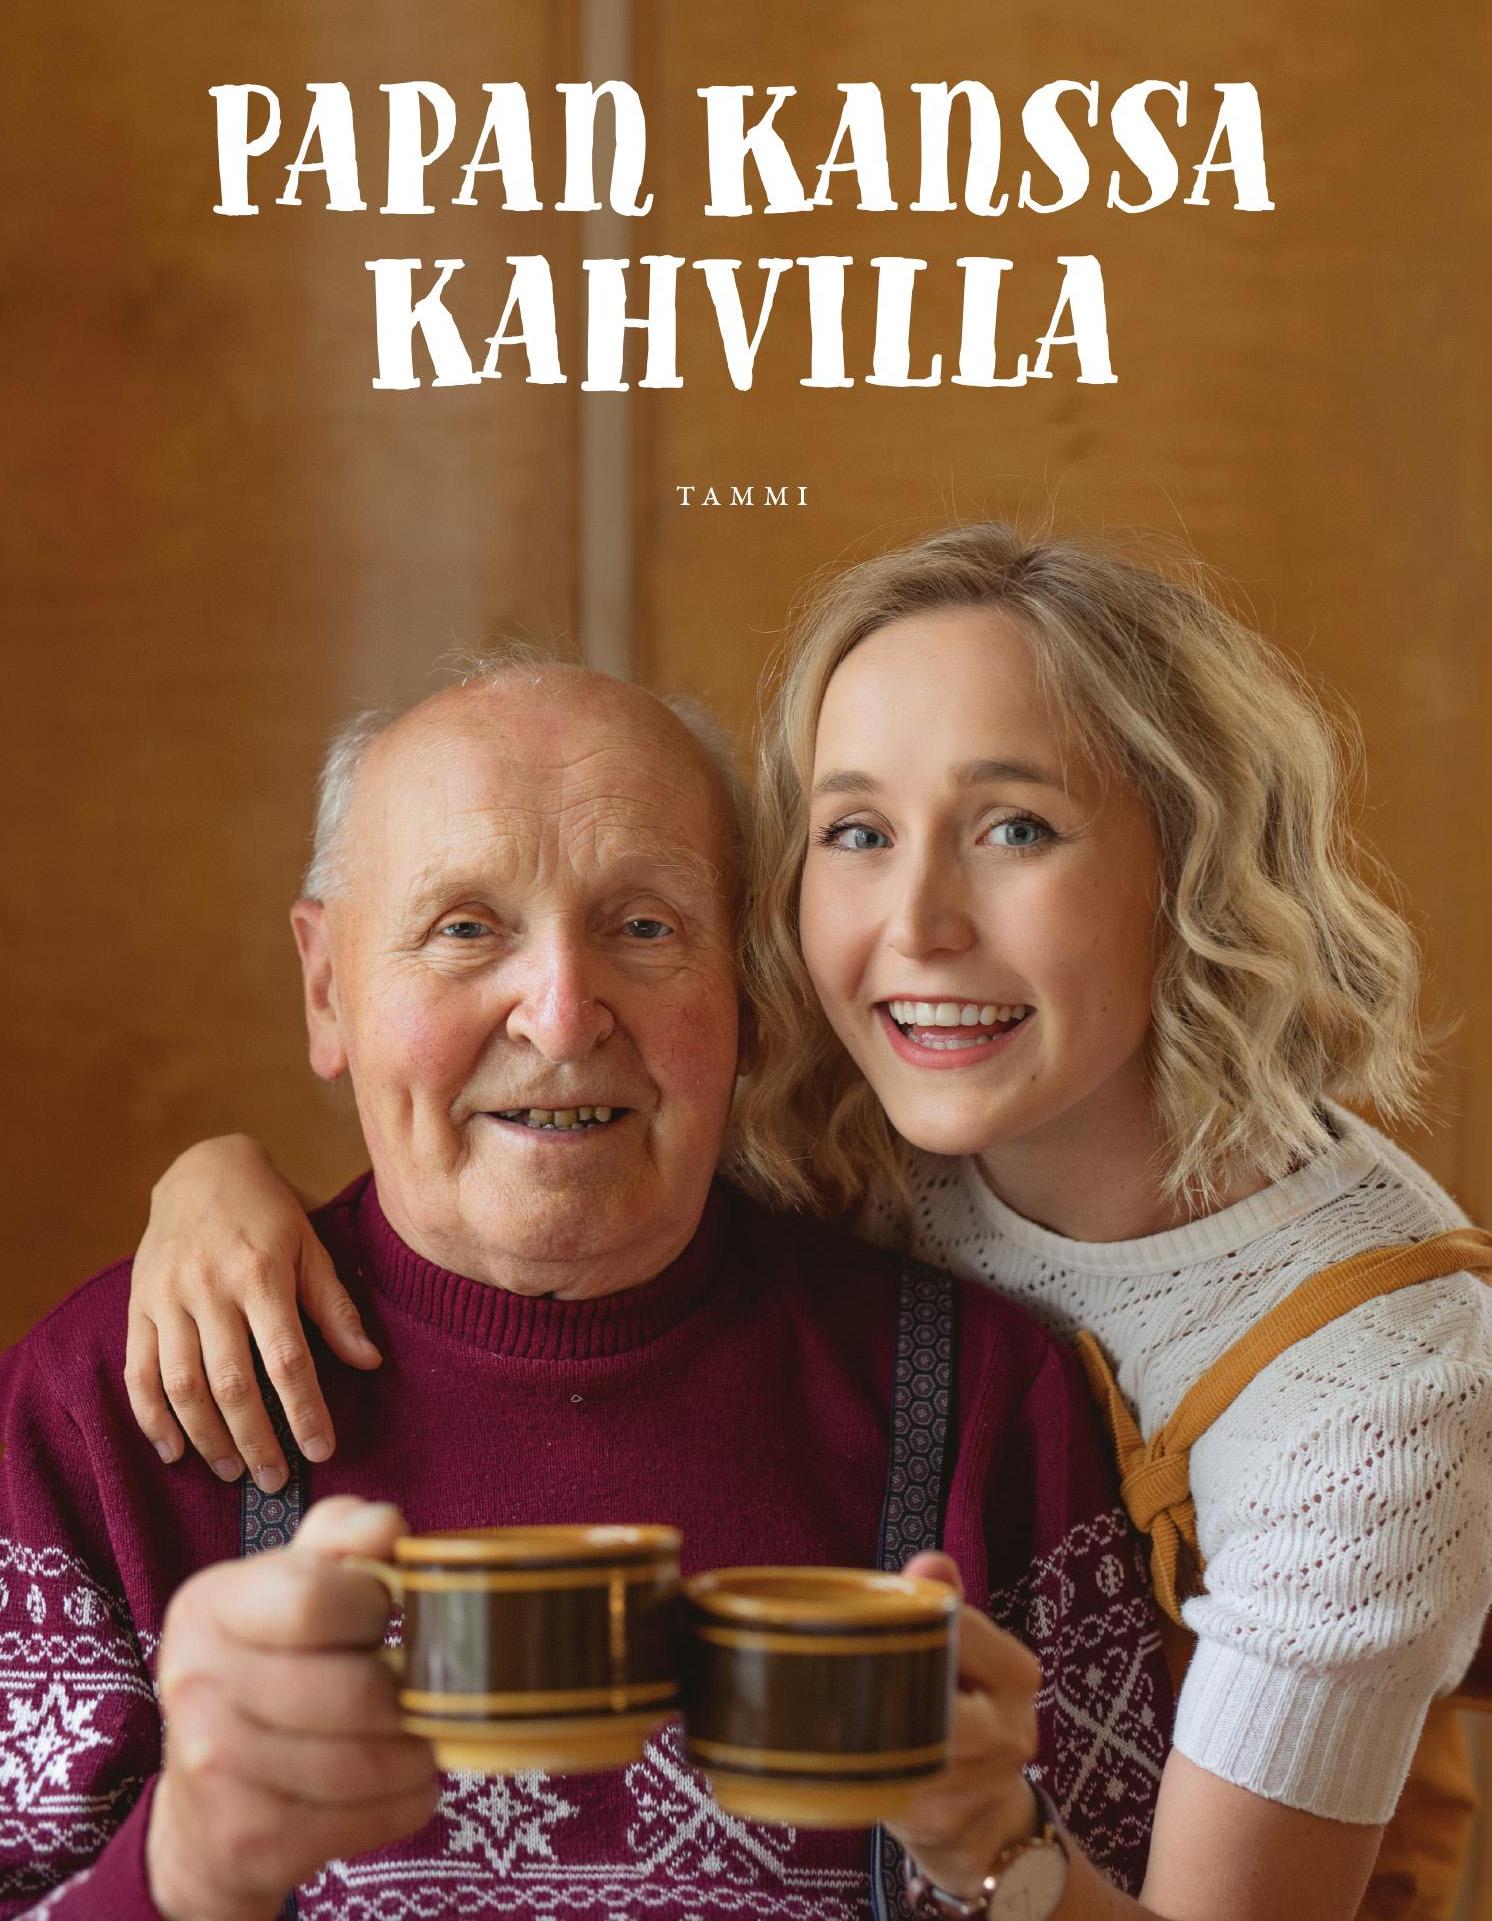 Papan kanssa kahvilla -kniigu on myödävänny Suomen laukois. Myös se voibi lugie sähkökniigannu libo kuunnelta audiokniigannu. 12+